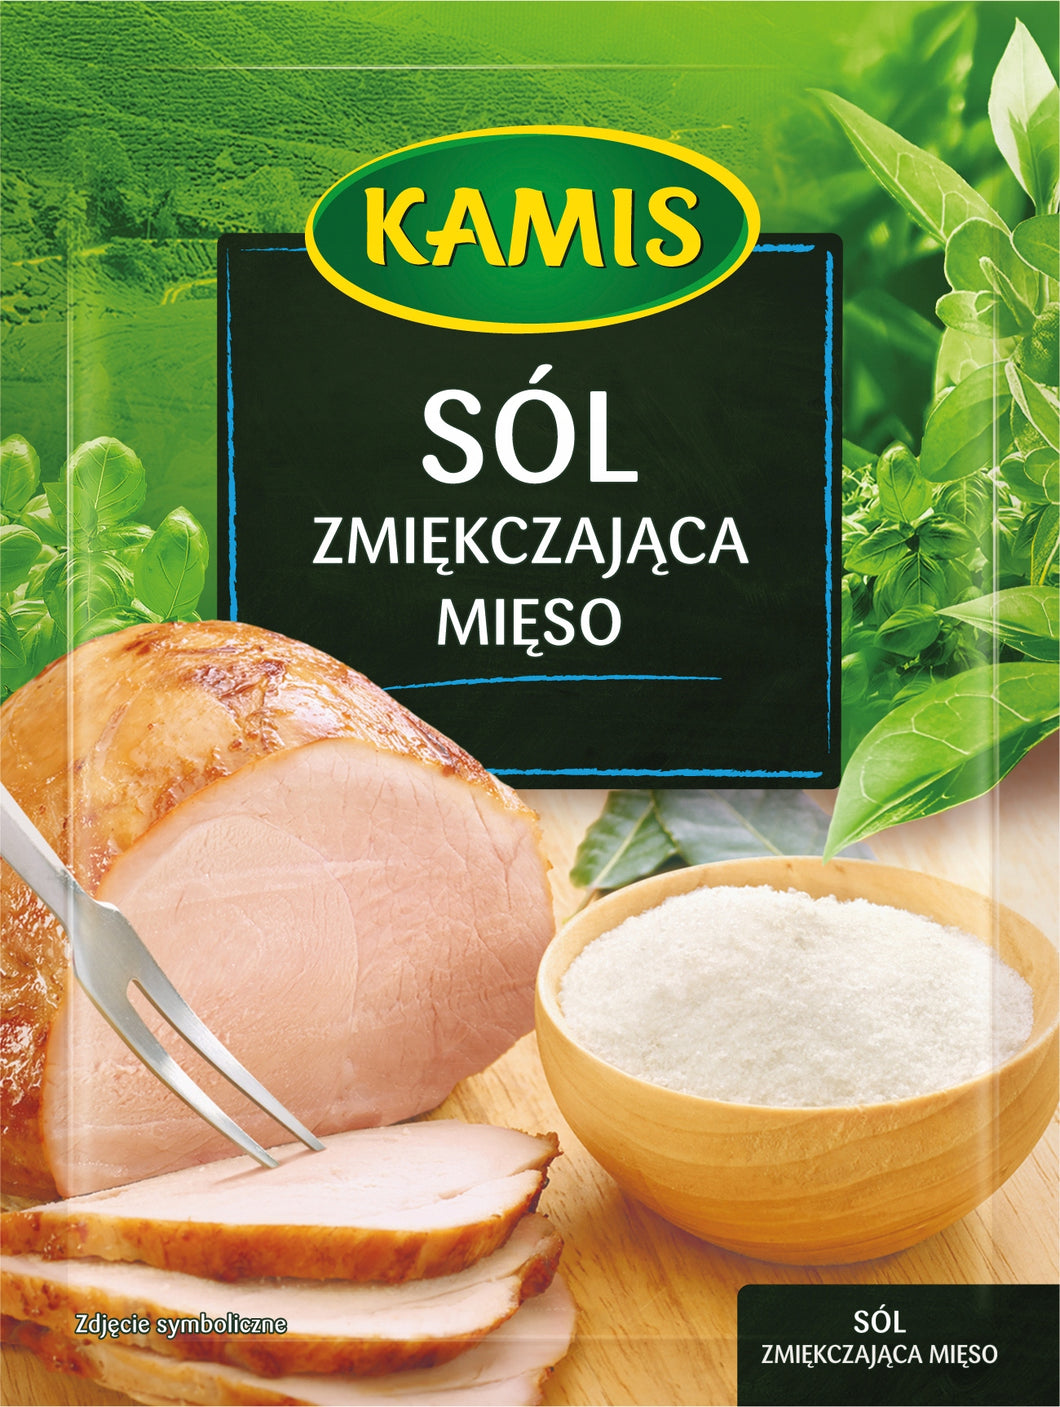 Kamis Sol Zmiekczajaca Mieso 30g Salt